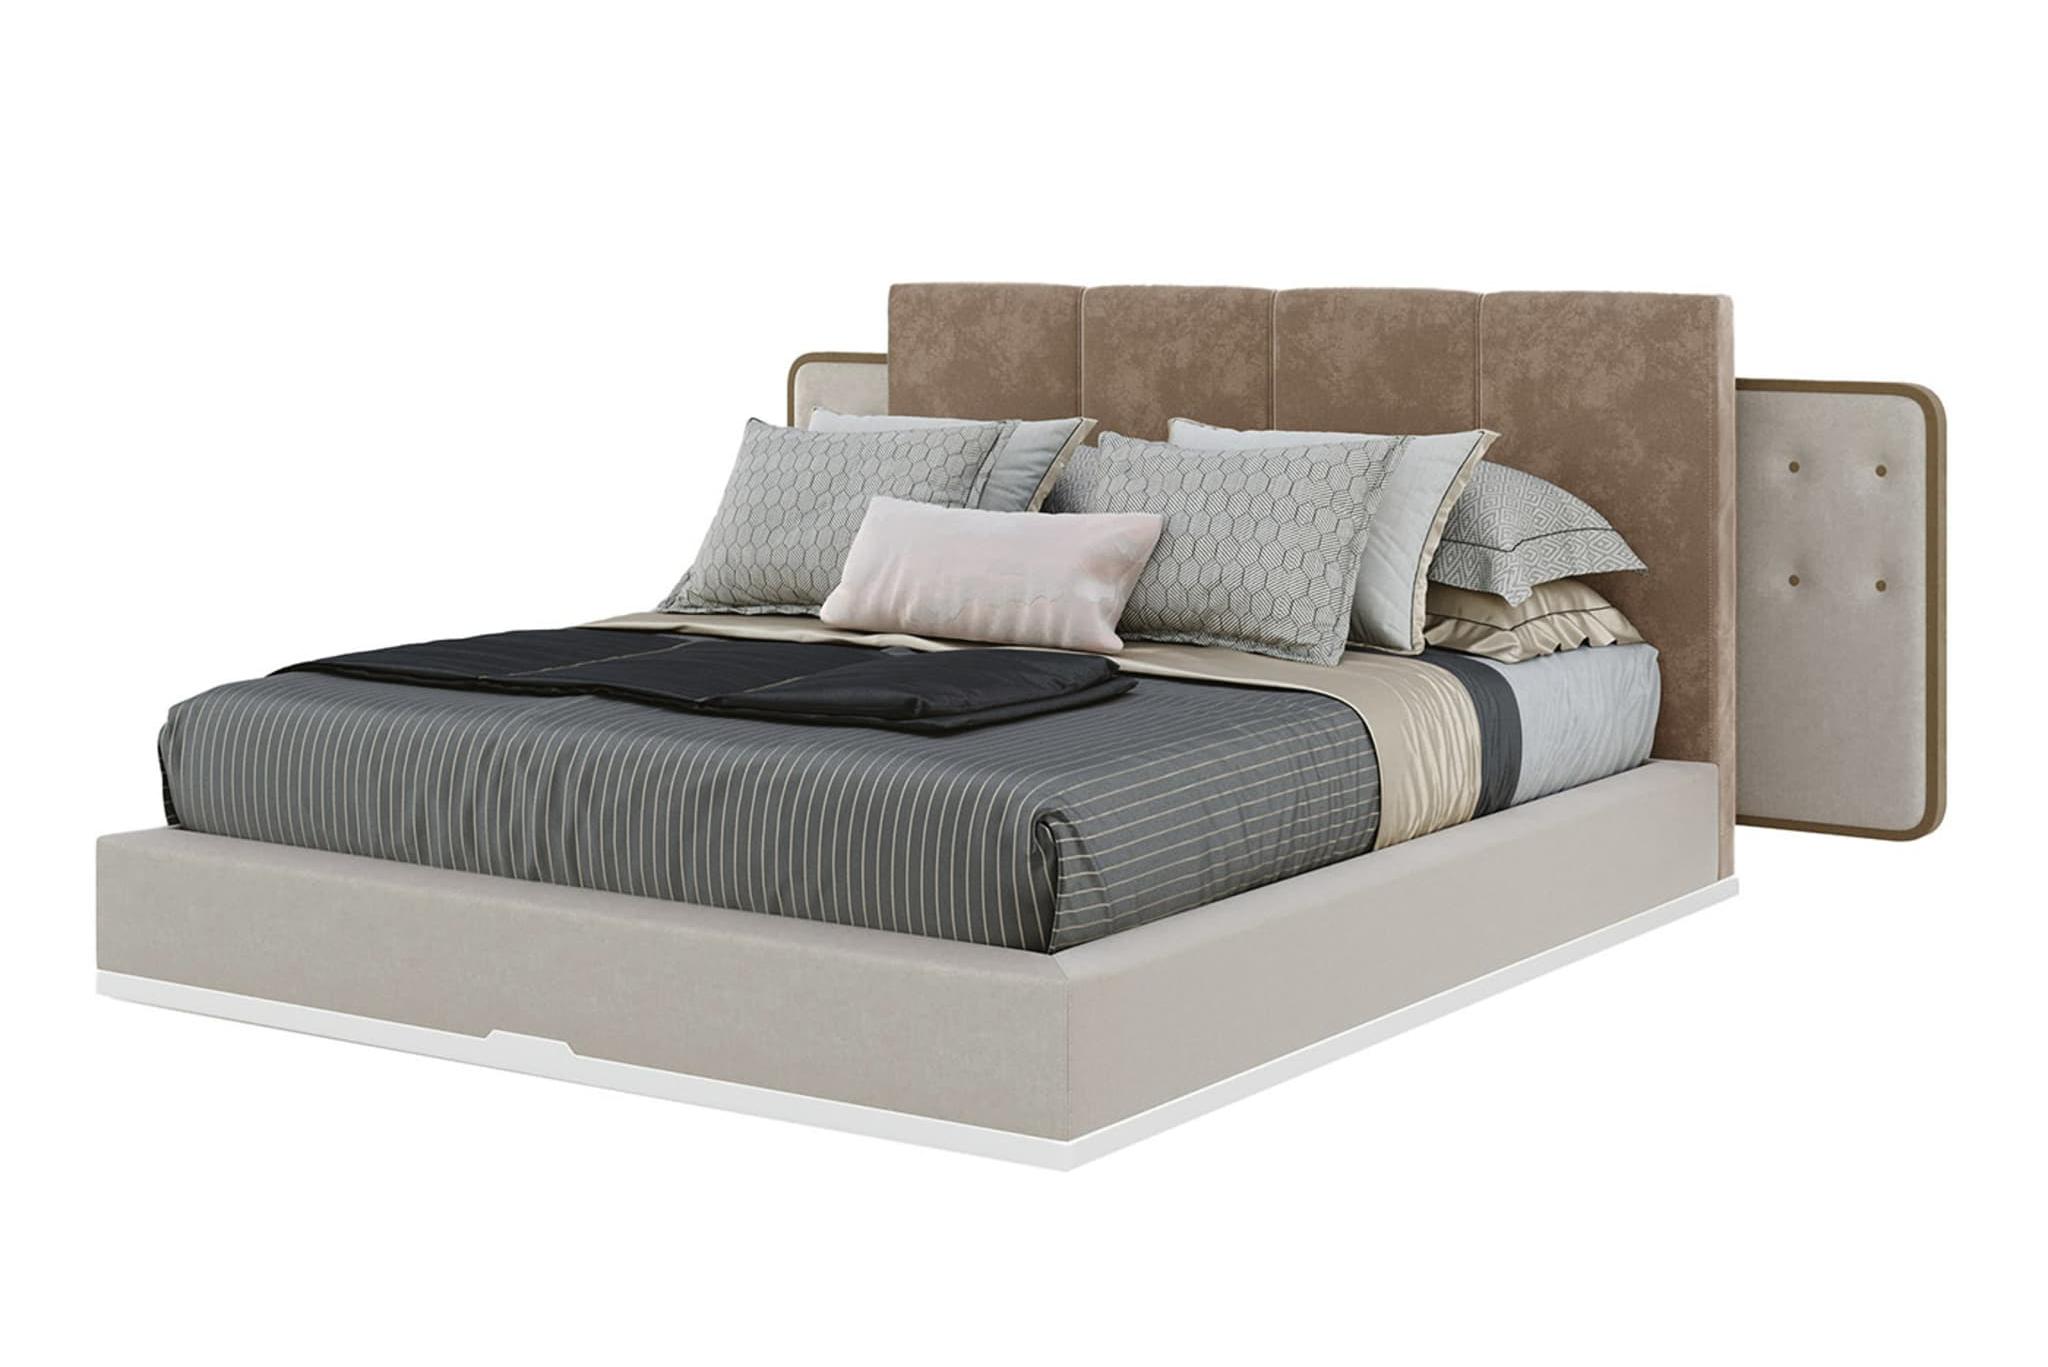 Lola Luxurious Italian Bed